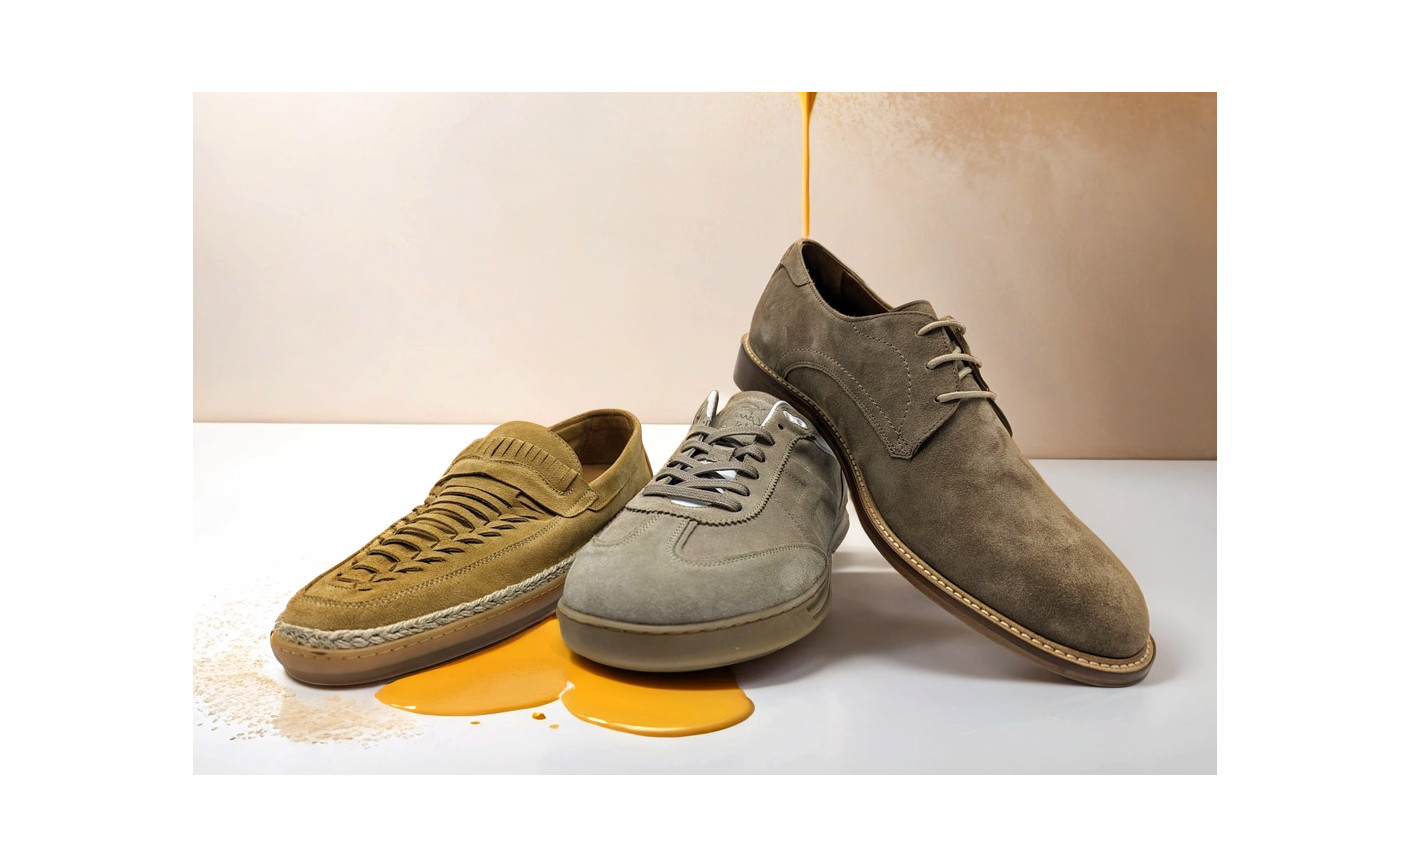 Expo Riva Schuh & Gardabags: Sojor apresenta a sua nova coleção de calçado